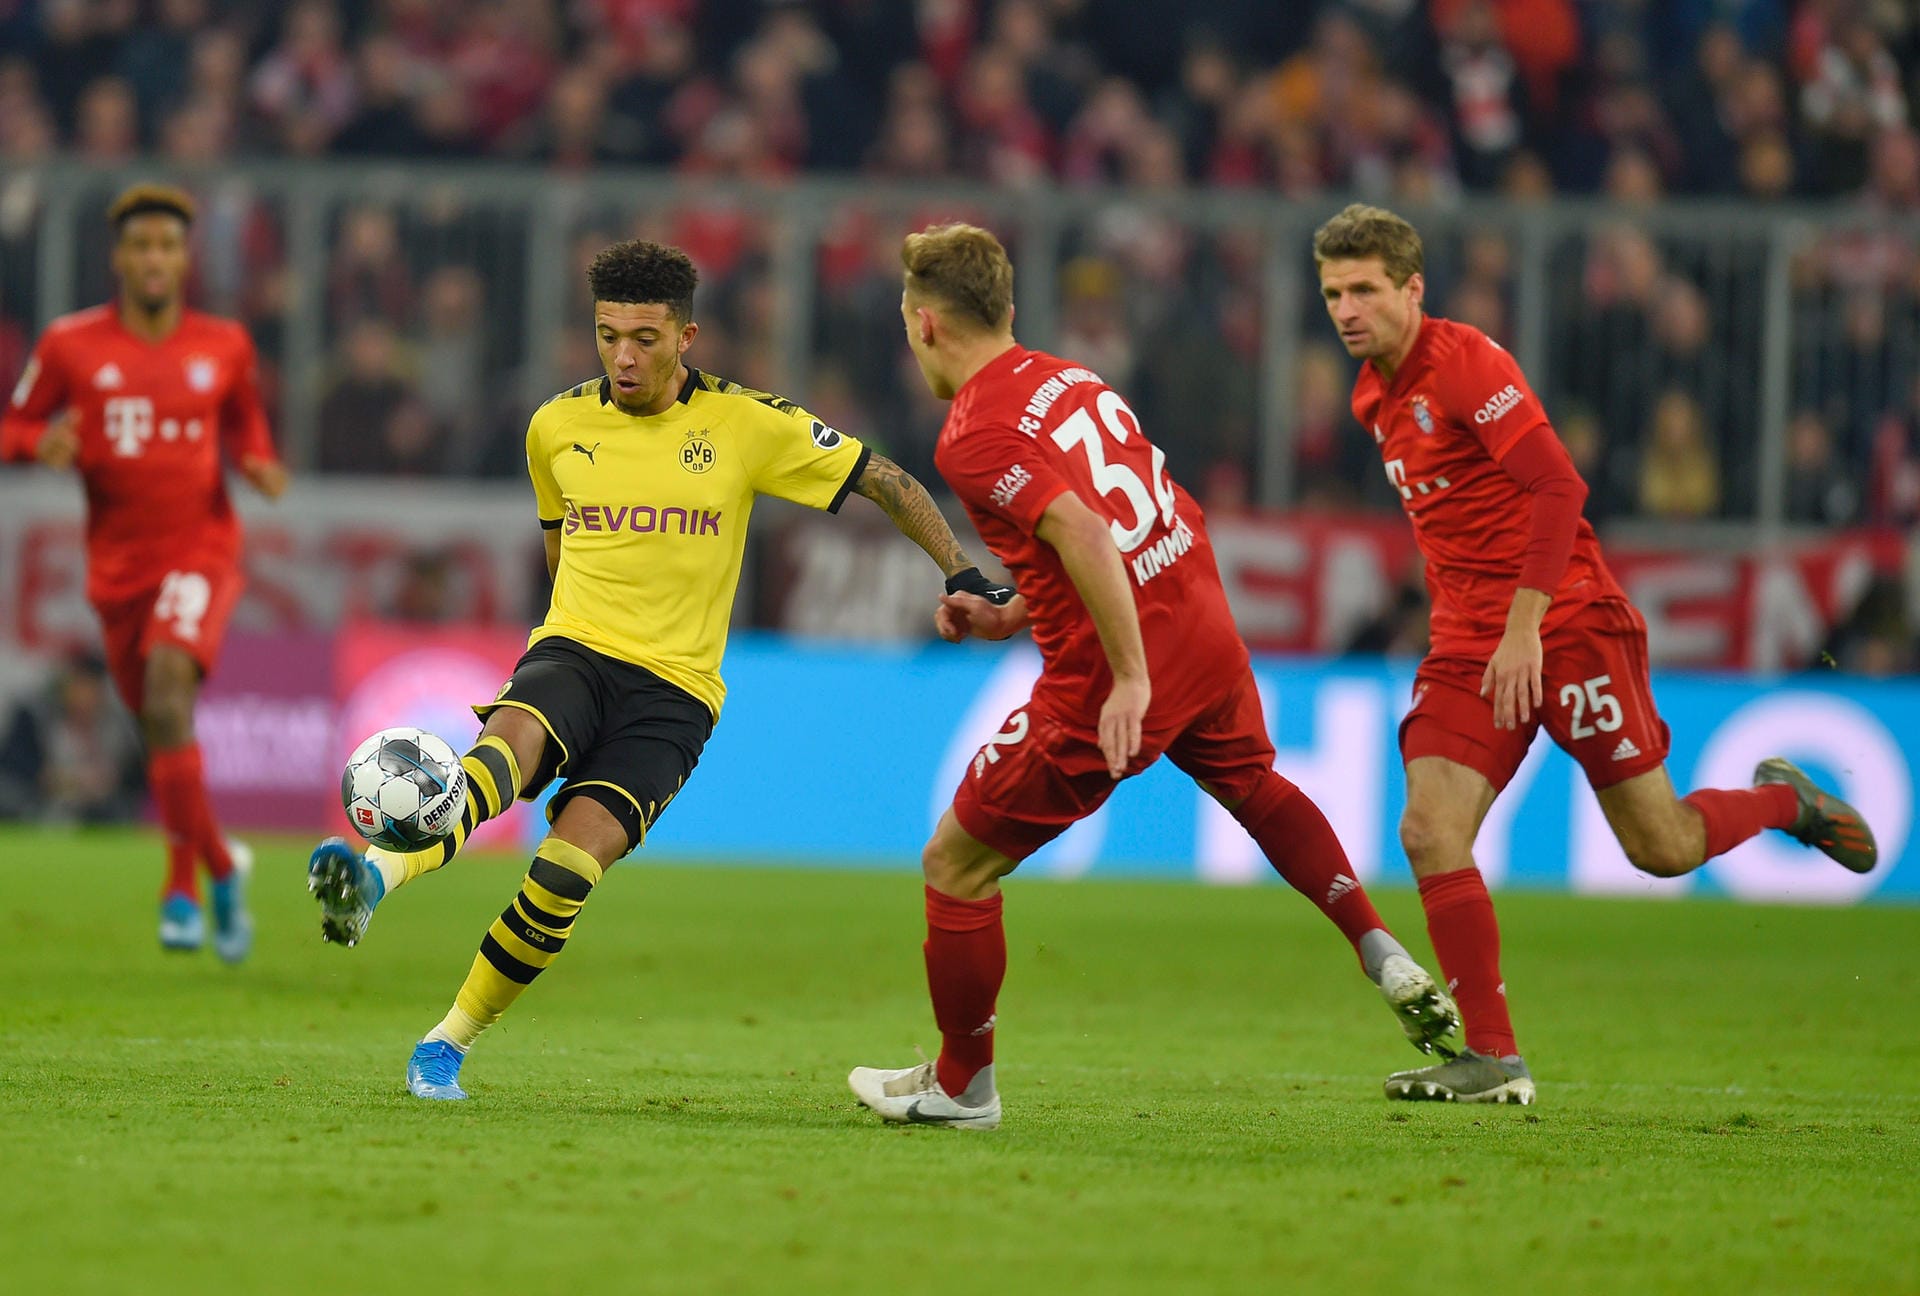 The Sun (England): "Dortmunds Lucien Favre bestätigte nach dem Spiel, dass es sich bei der Auswechslung von Jadon Sancho nicht um eine Verletzung handelte, sondern taktische Gründe hatte."